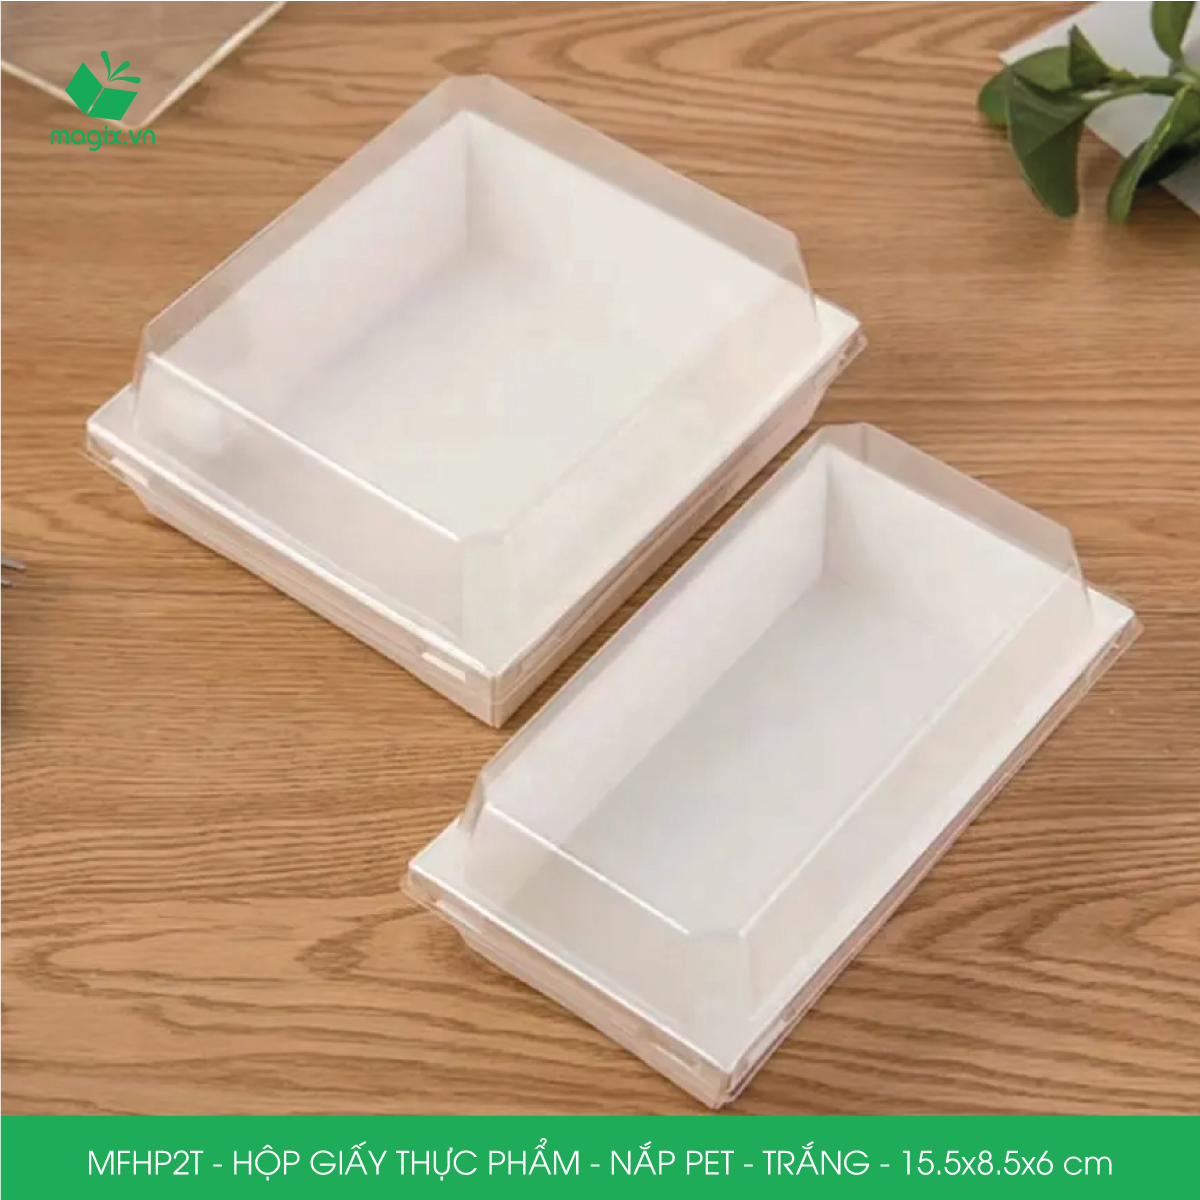 MFHP2T - 15.5x8.5x6 cm - 50 hộp giấy thực phẩm màu trắng nắp Pet, hộp giấy chữ nhật đựng thức ăn, hộp bánh nắp trong